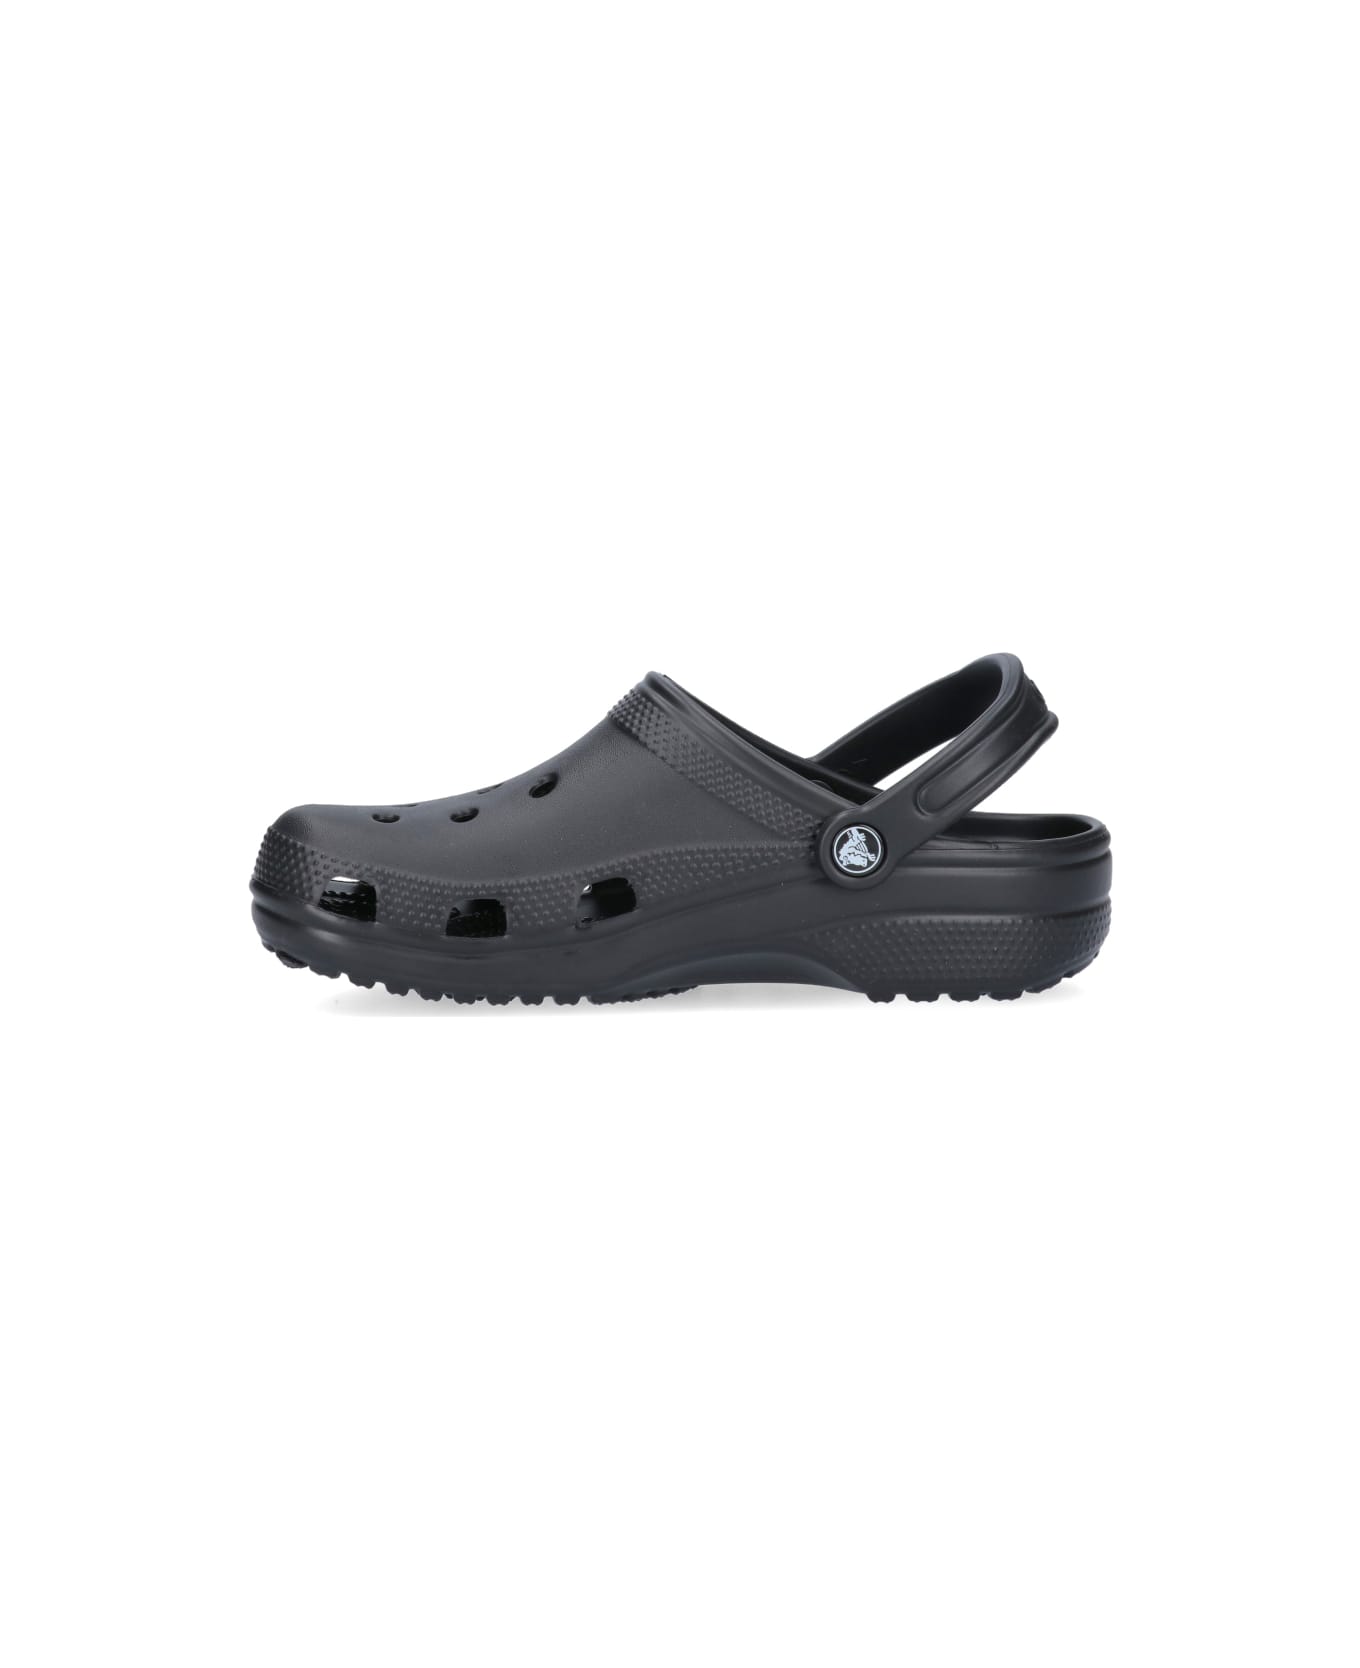 Crocs Flat Shoes - Black